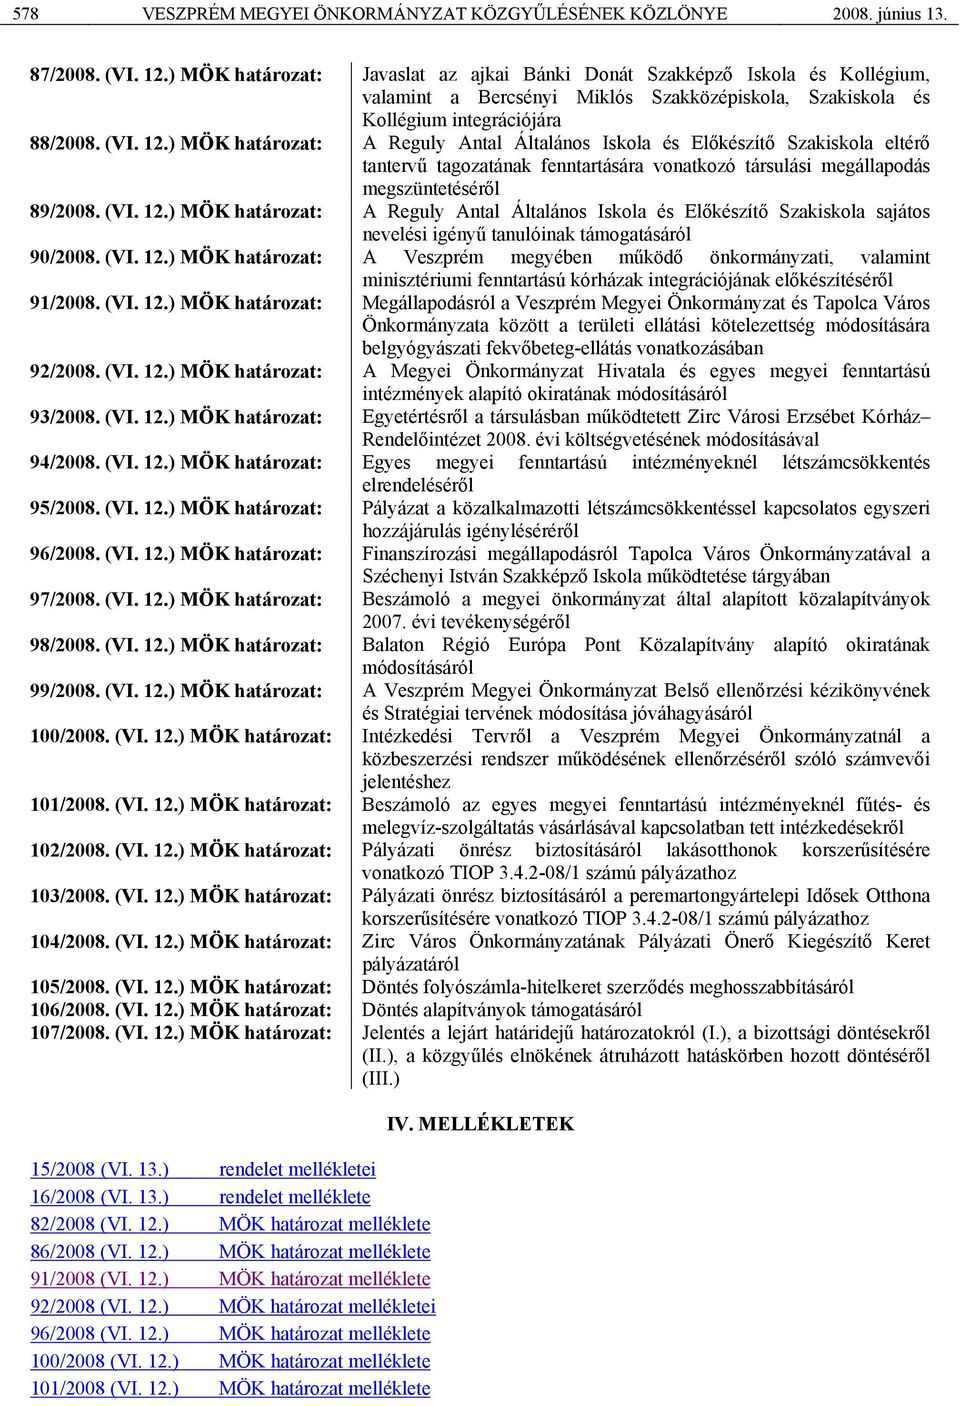 ) MÖK határozat: A Reguly Antal Általános Iskola és Előkészítő Szakiskola eltérő tantervű tagozatának fenntartására vonatkozó társulási megállapodás megszüntetéséről 89/2008. (VI. 12.